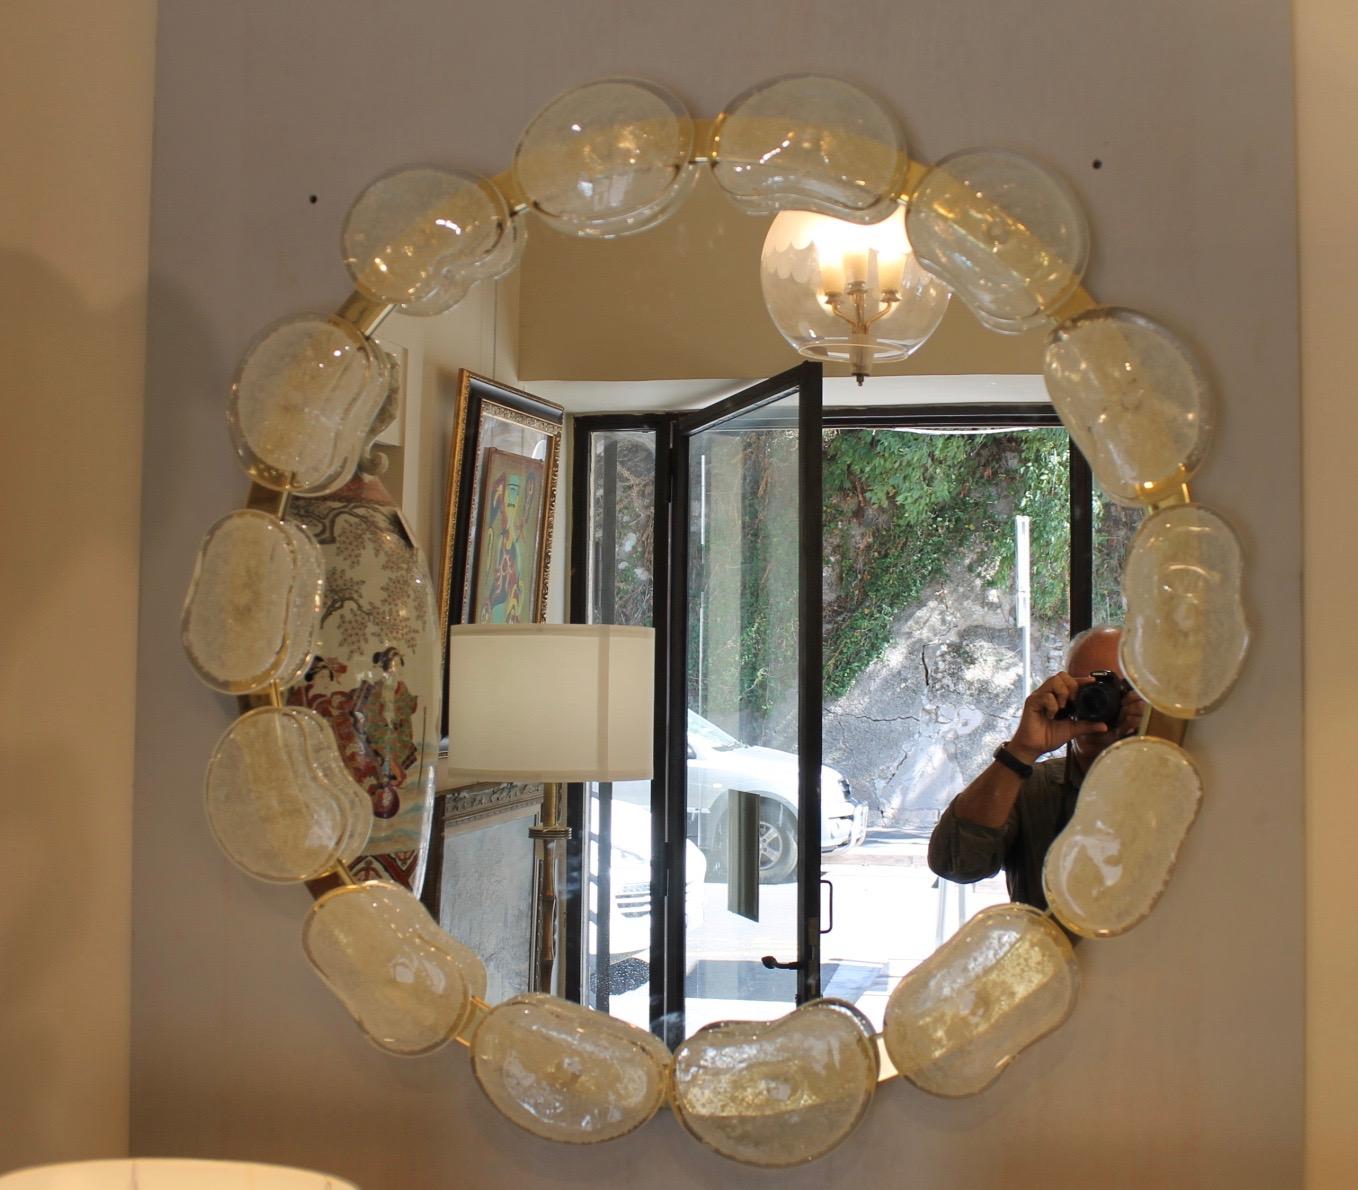 Miroir rond entouré de galets en verre de Murano. Le contour du miroir est en laiton doré.
Création d'un maître verrier de Murano
Miroir pouvant être placé dans une entrée, un salon au-dessus d'un meuble.
Pendant le transport, les pierres se